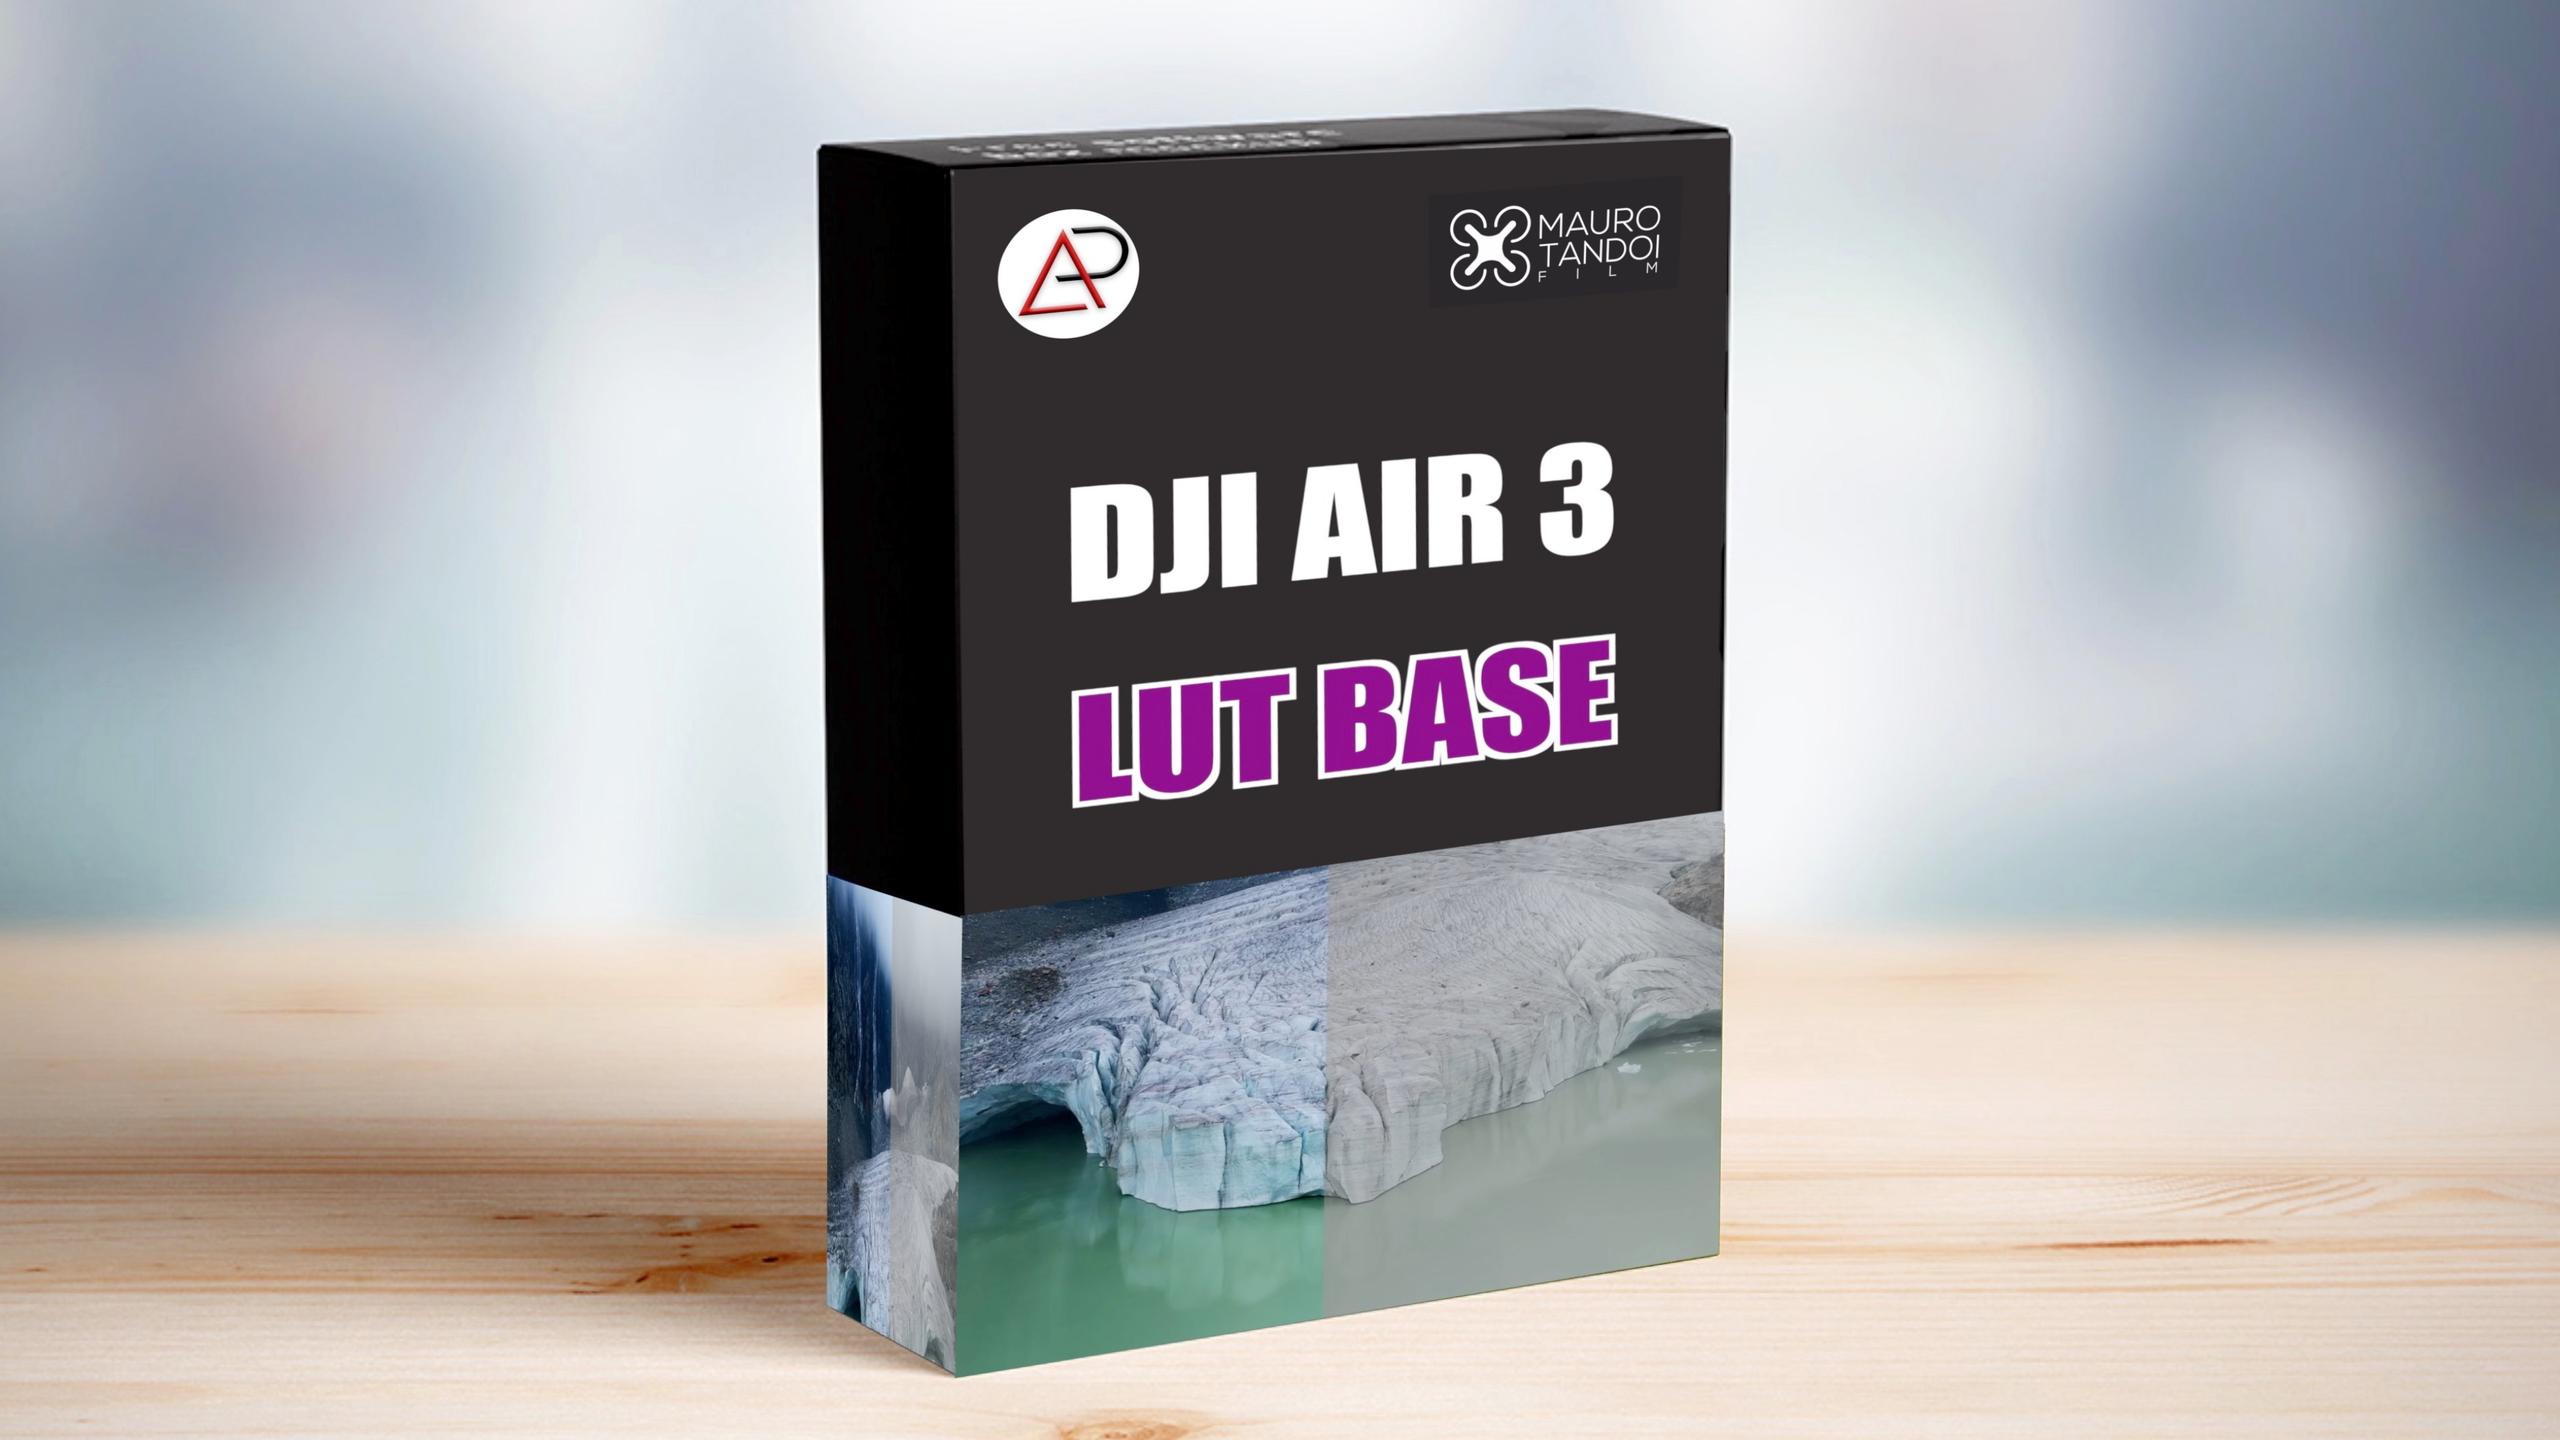 DJI AIR 3 LUT BASE